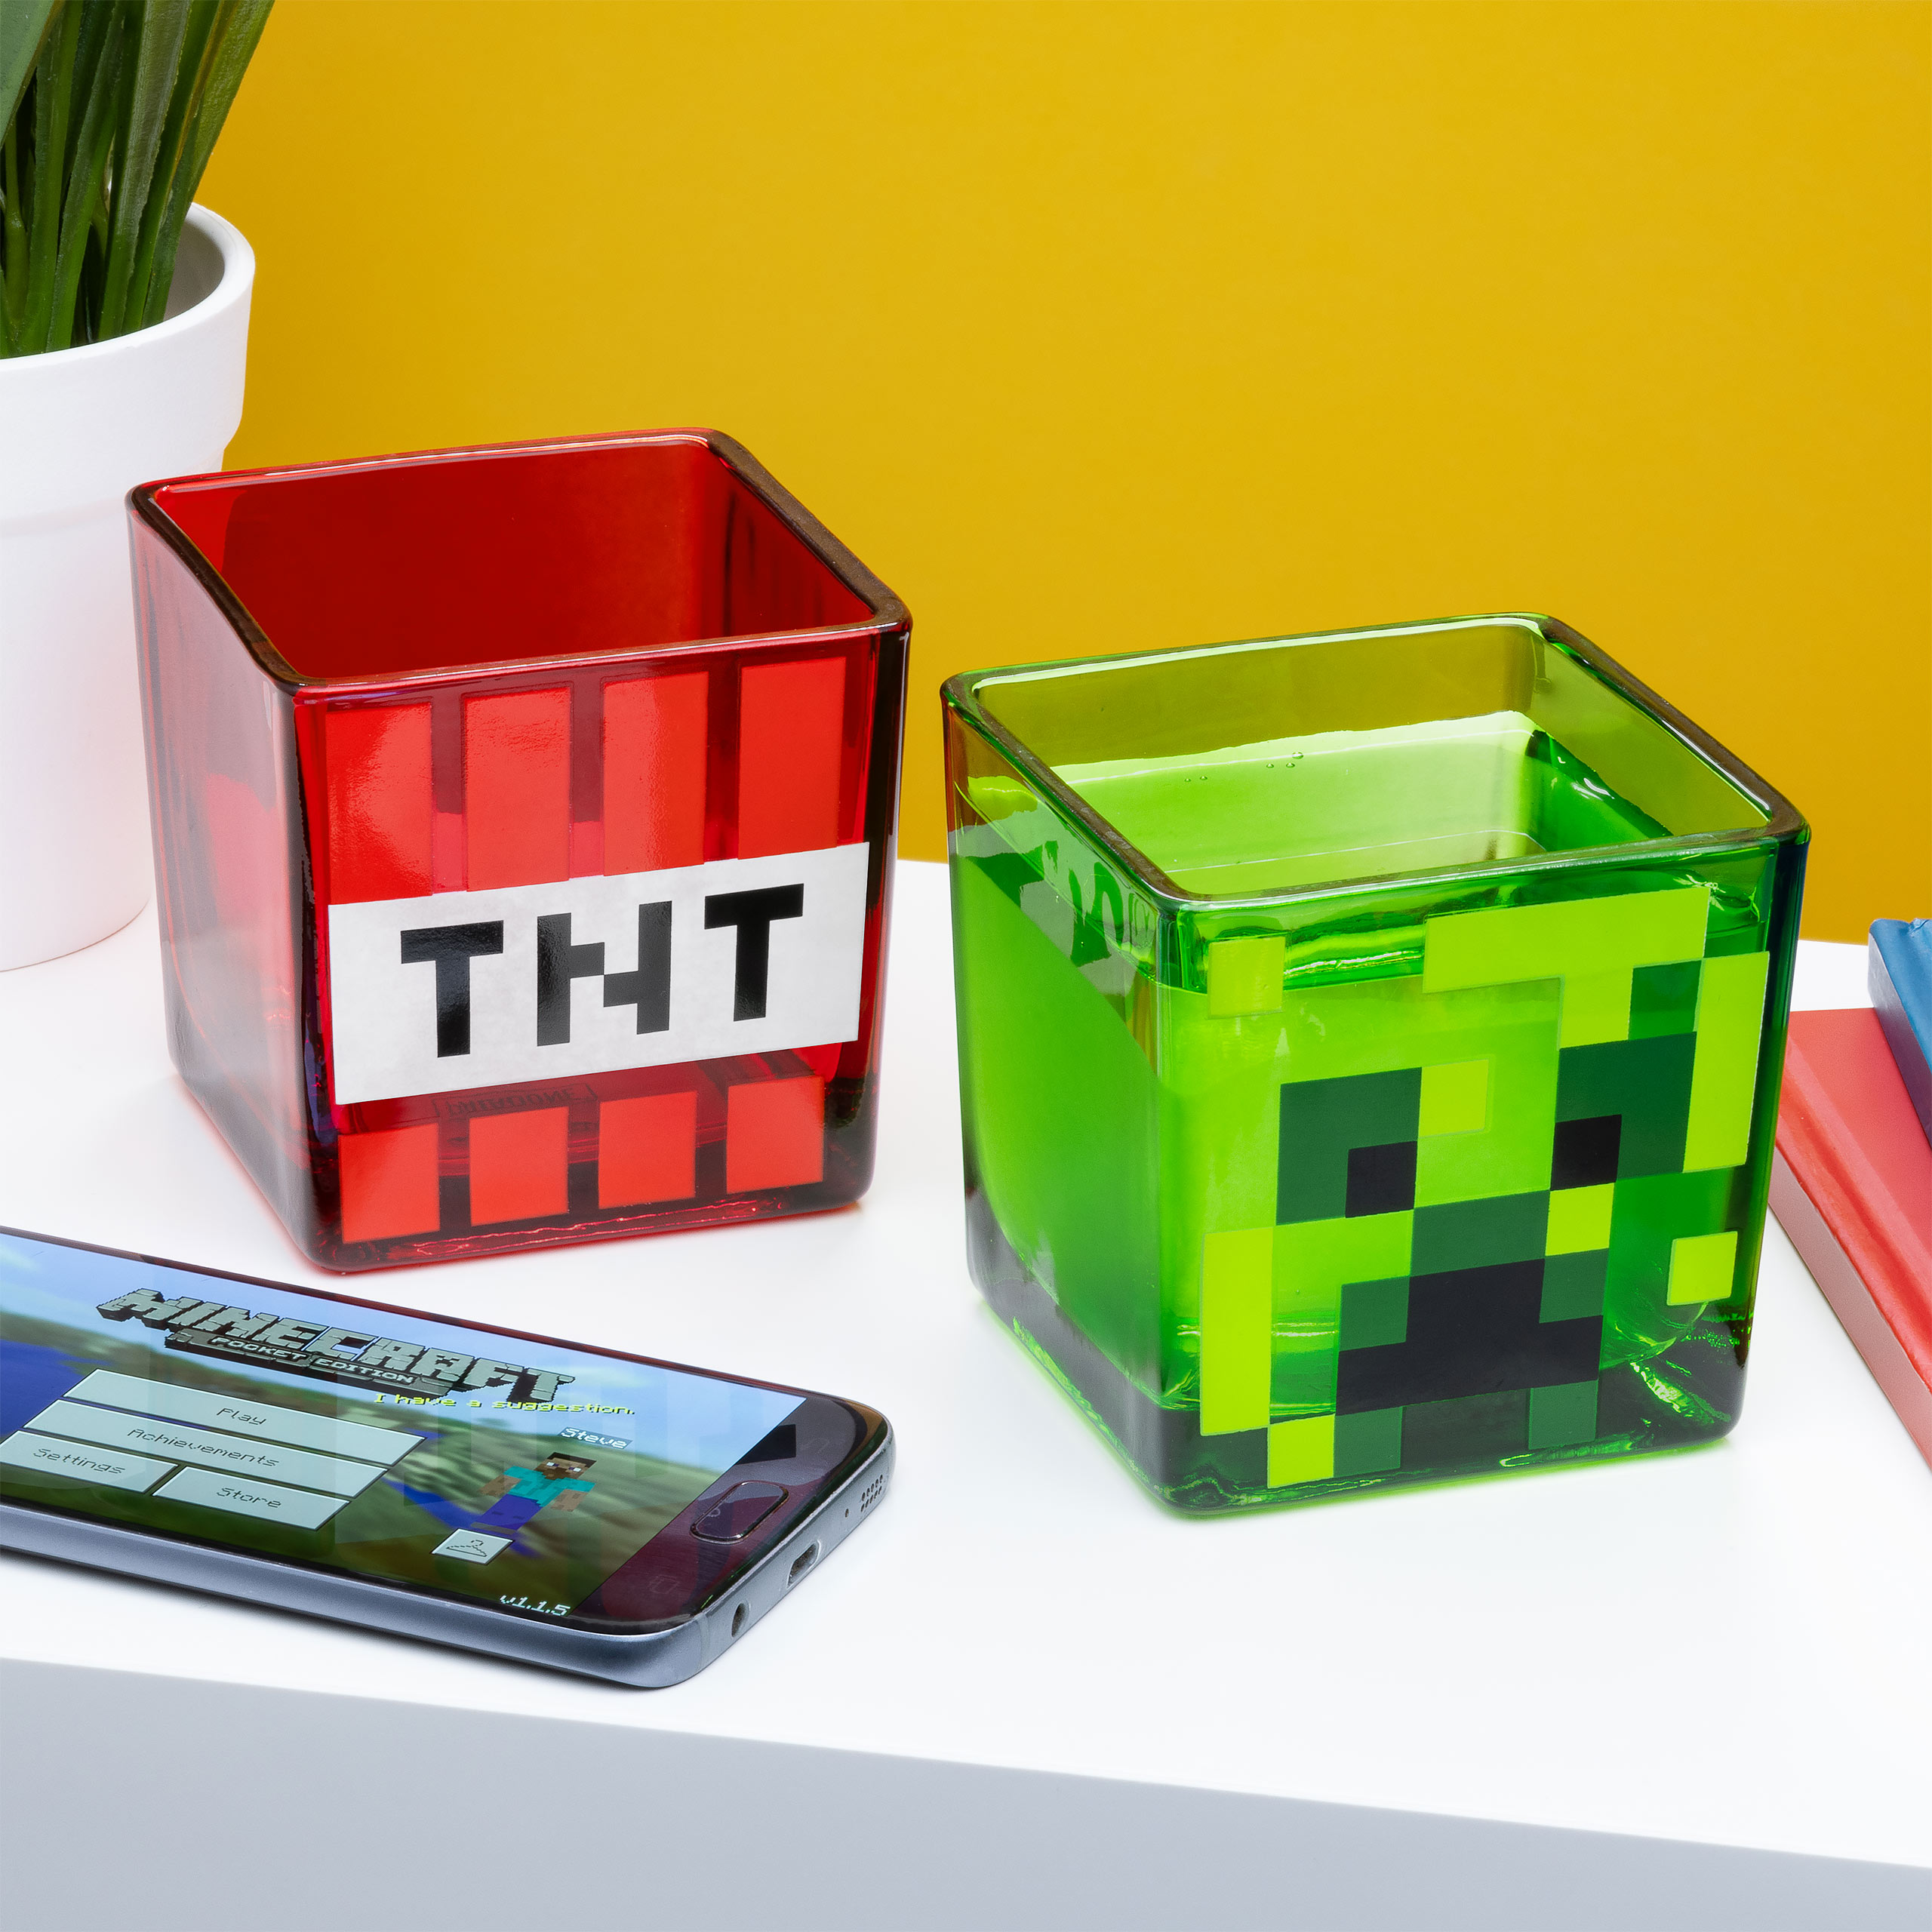 Minecraft - Creeper und TNT Gläser 2er Set